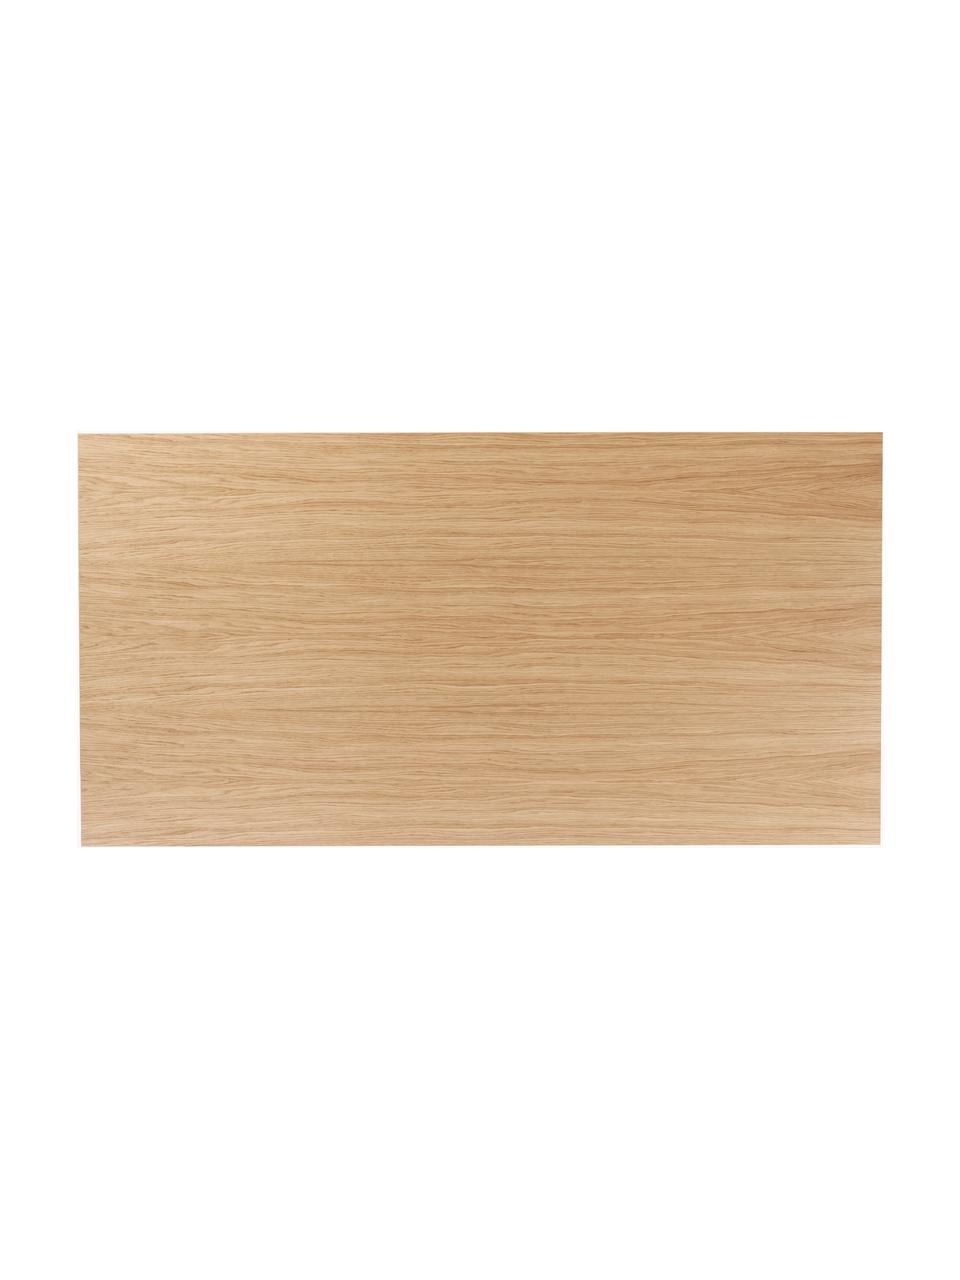 Jídelní stůl Androgyne, různé velikosti, Dřevovláknitá deska střední hustoty (MDF) s dubovou dýhou, Dřevo, světle mořené, Š 280 cm, H 110 cm